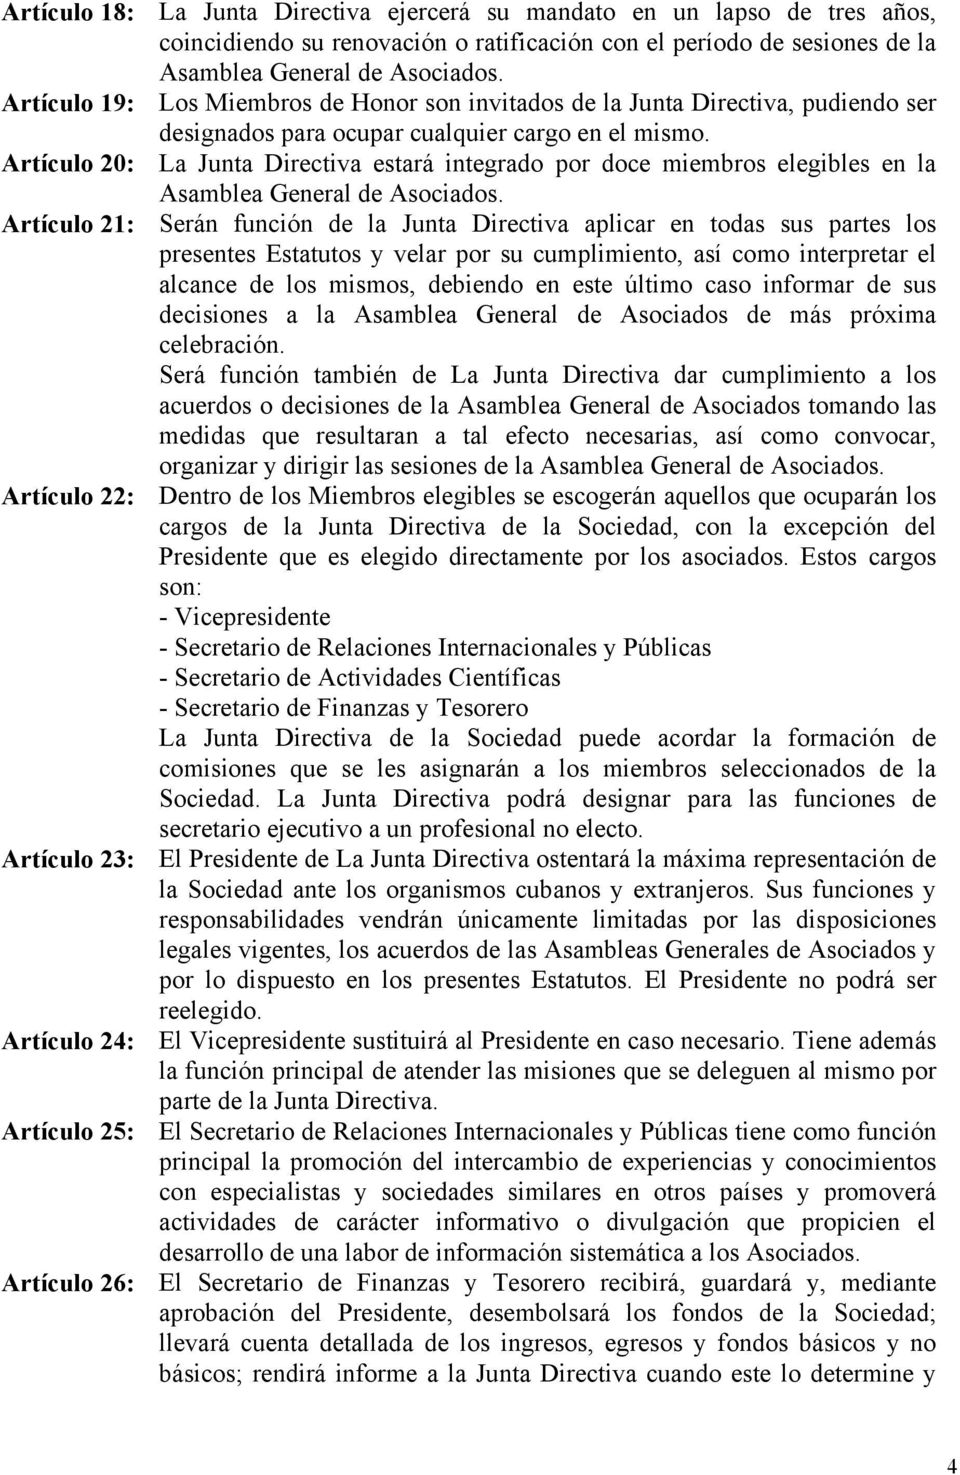 Artículo 20: La Junta Directiva estará integrado por doce miembros elegibles en la Asamblea General de Asociados.